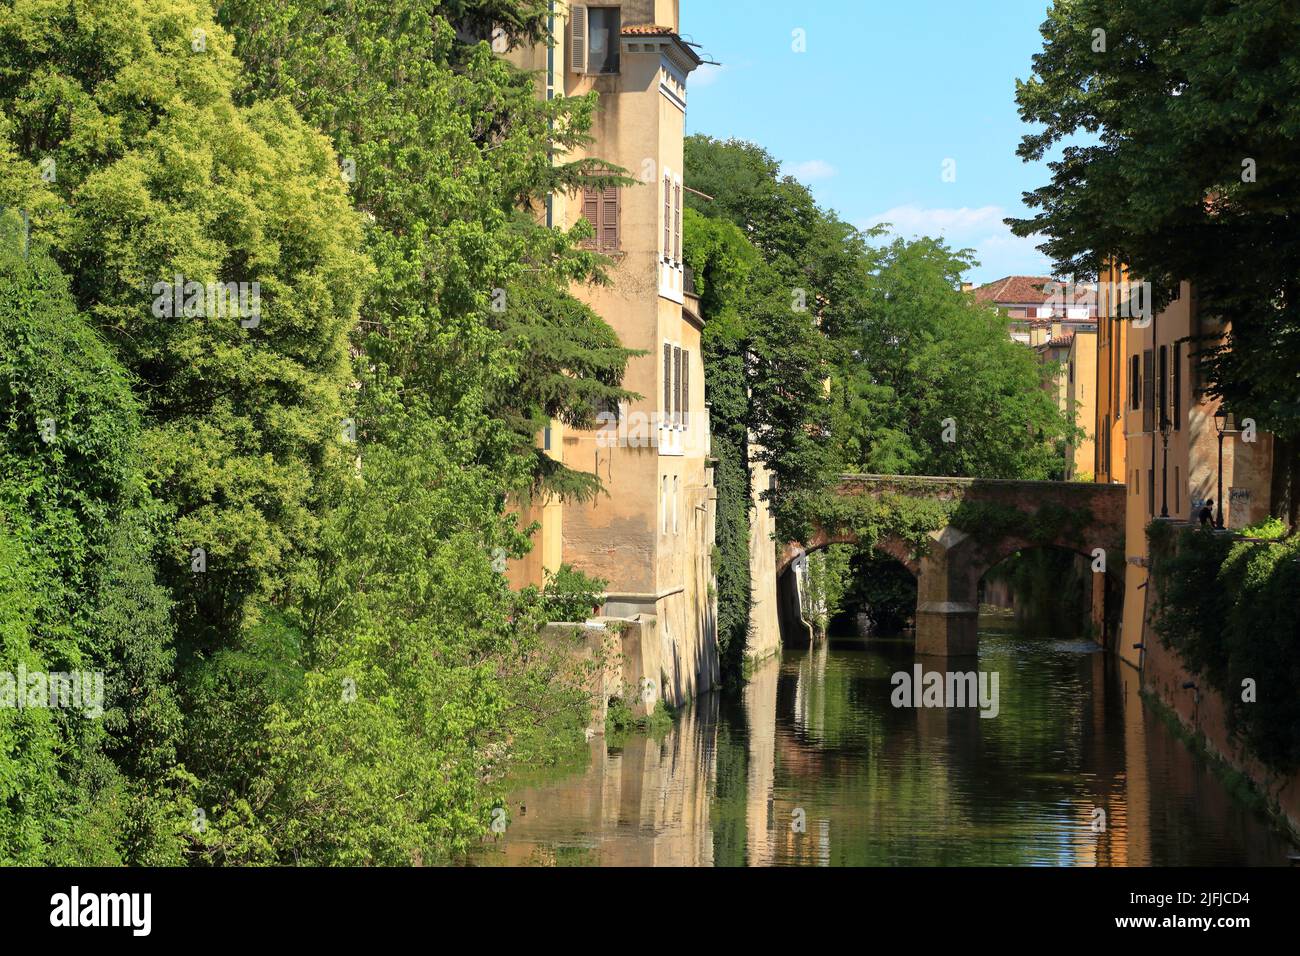 Il Rio di Mantova, Mantua canal, Italy Stock Photo